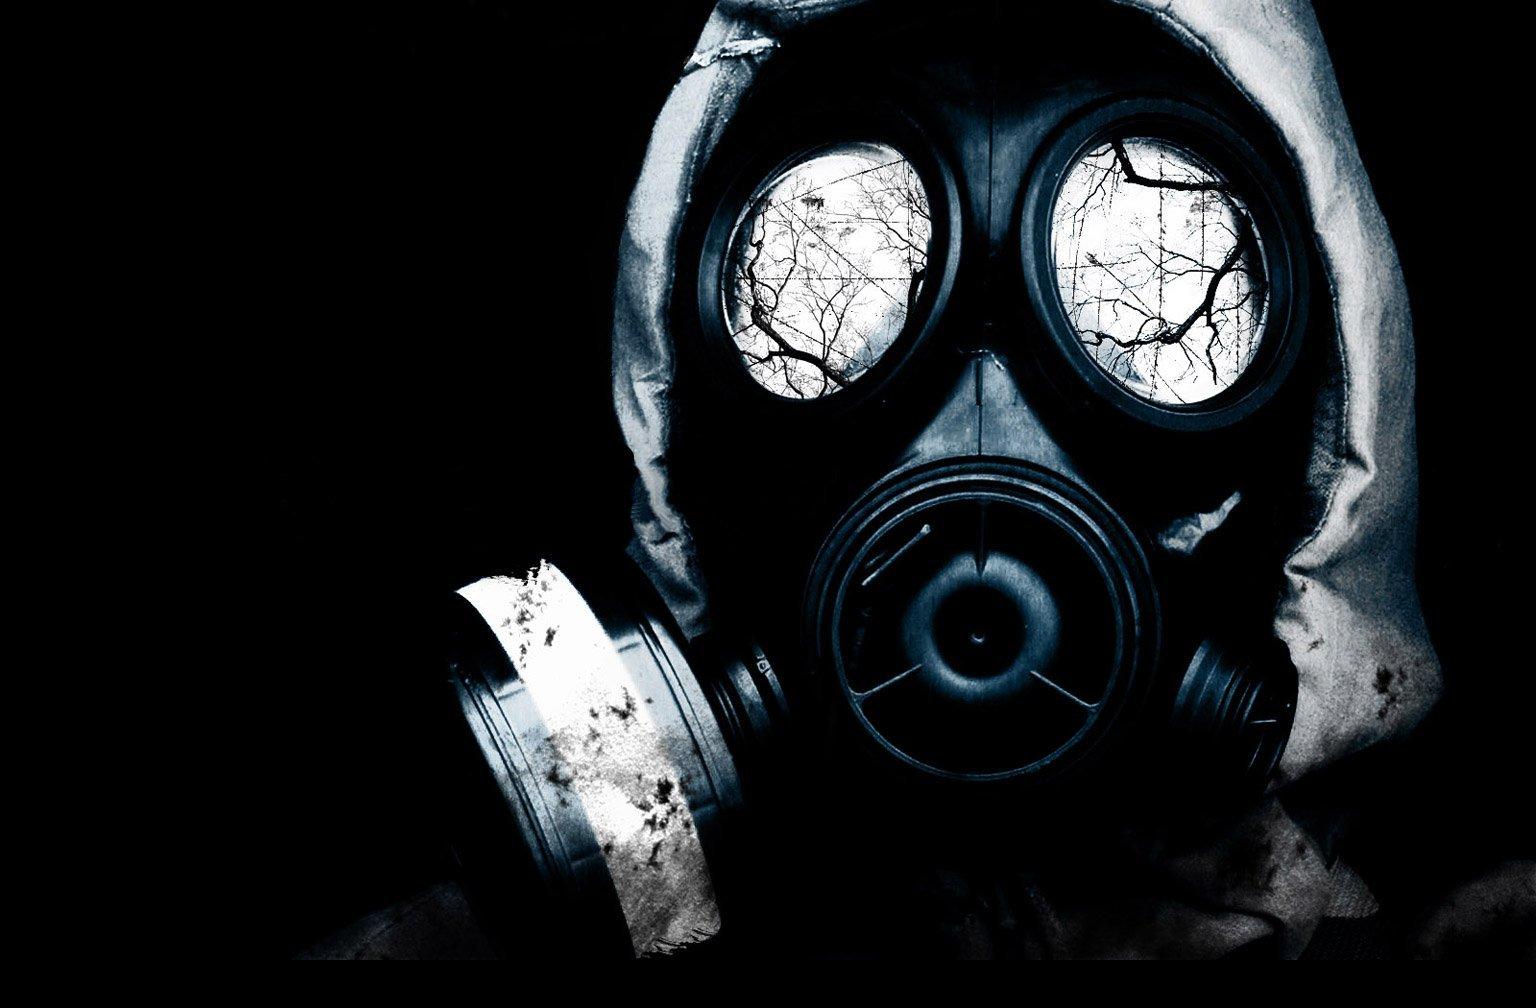 fond d'écran de masque à gaz,masque,masque à gaz,équipement de protection individuelle,vêtements,costume